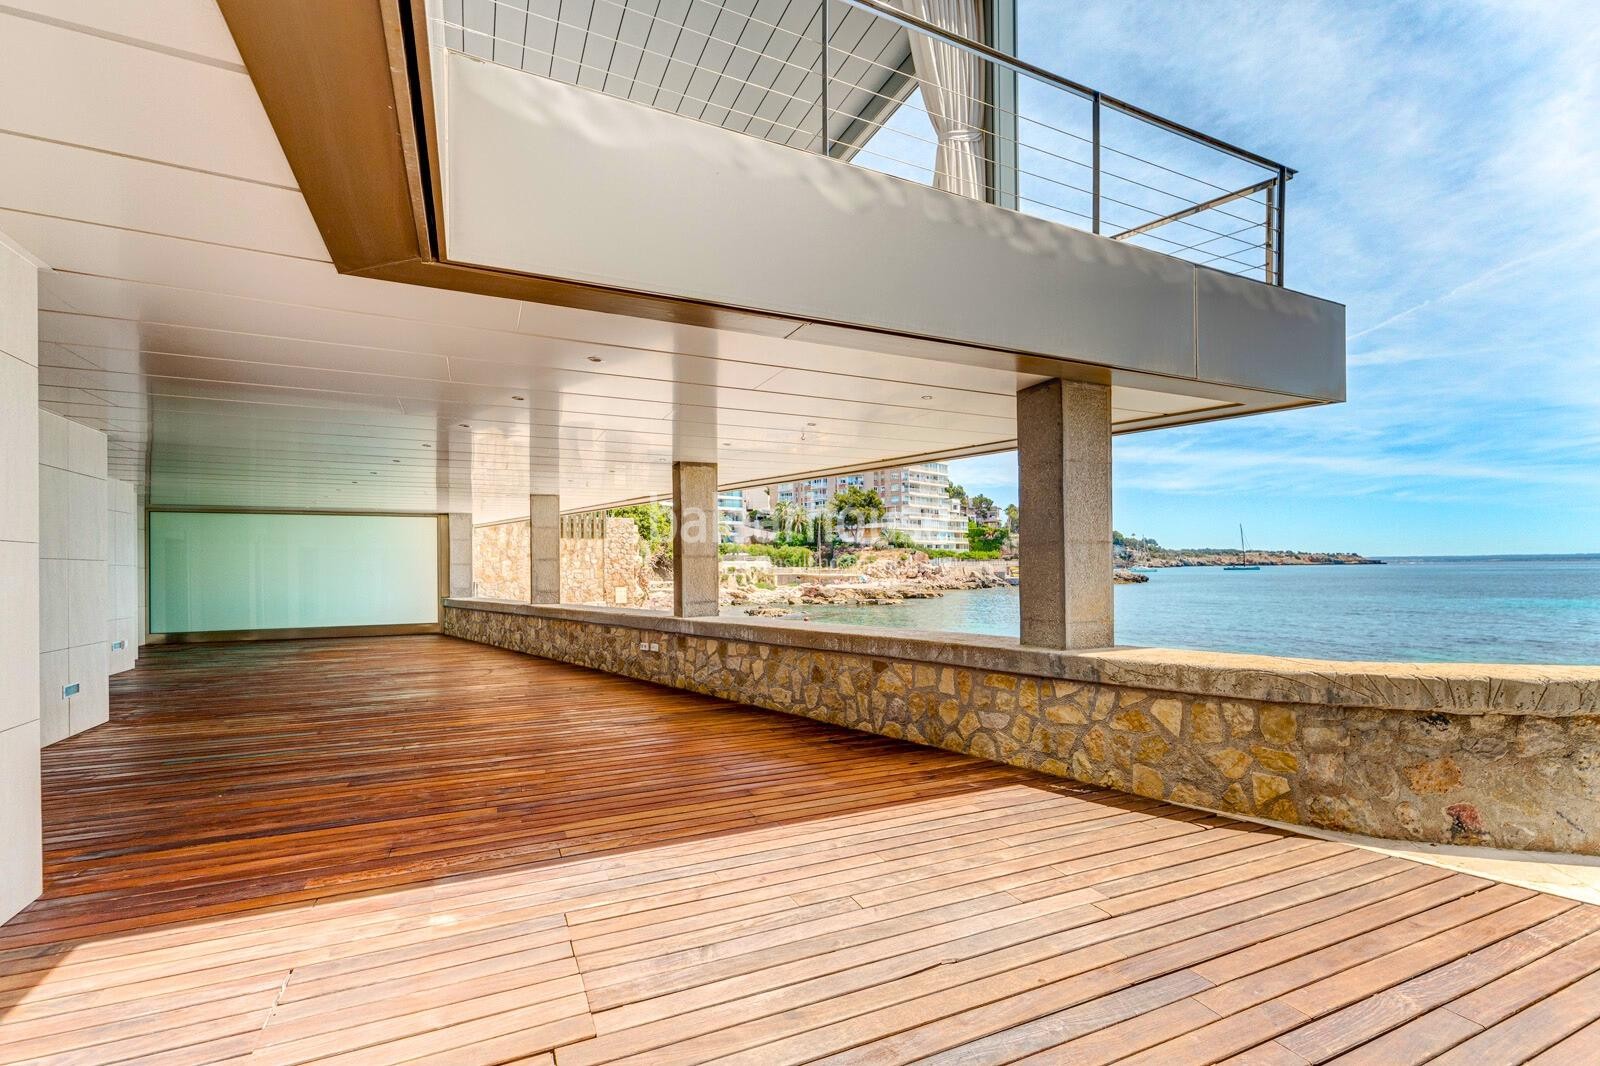 Exclusiva vivienda en primera línea de mar con gran terraza y acceso directo privado al mar